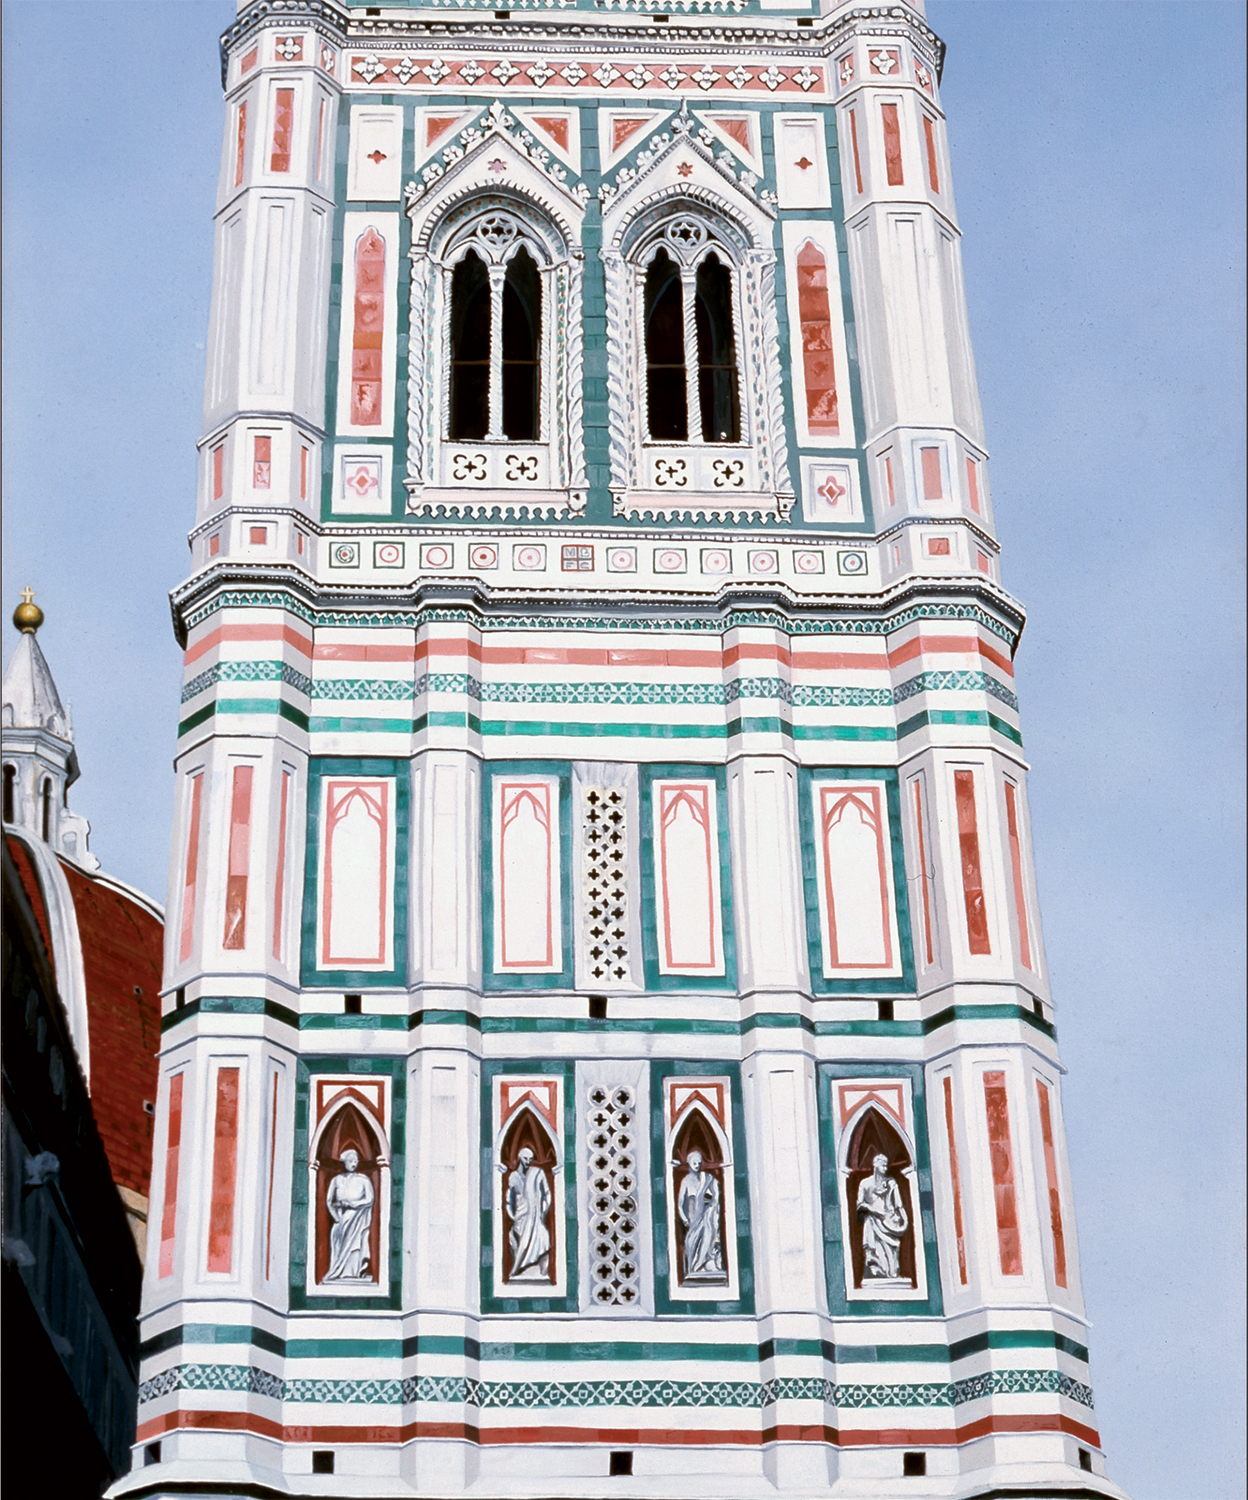 Tháp Chuông Giotto – Campanile di Giotto